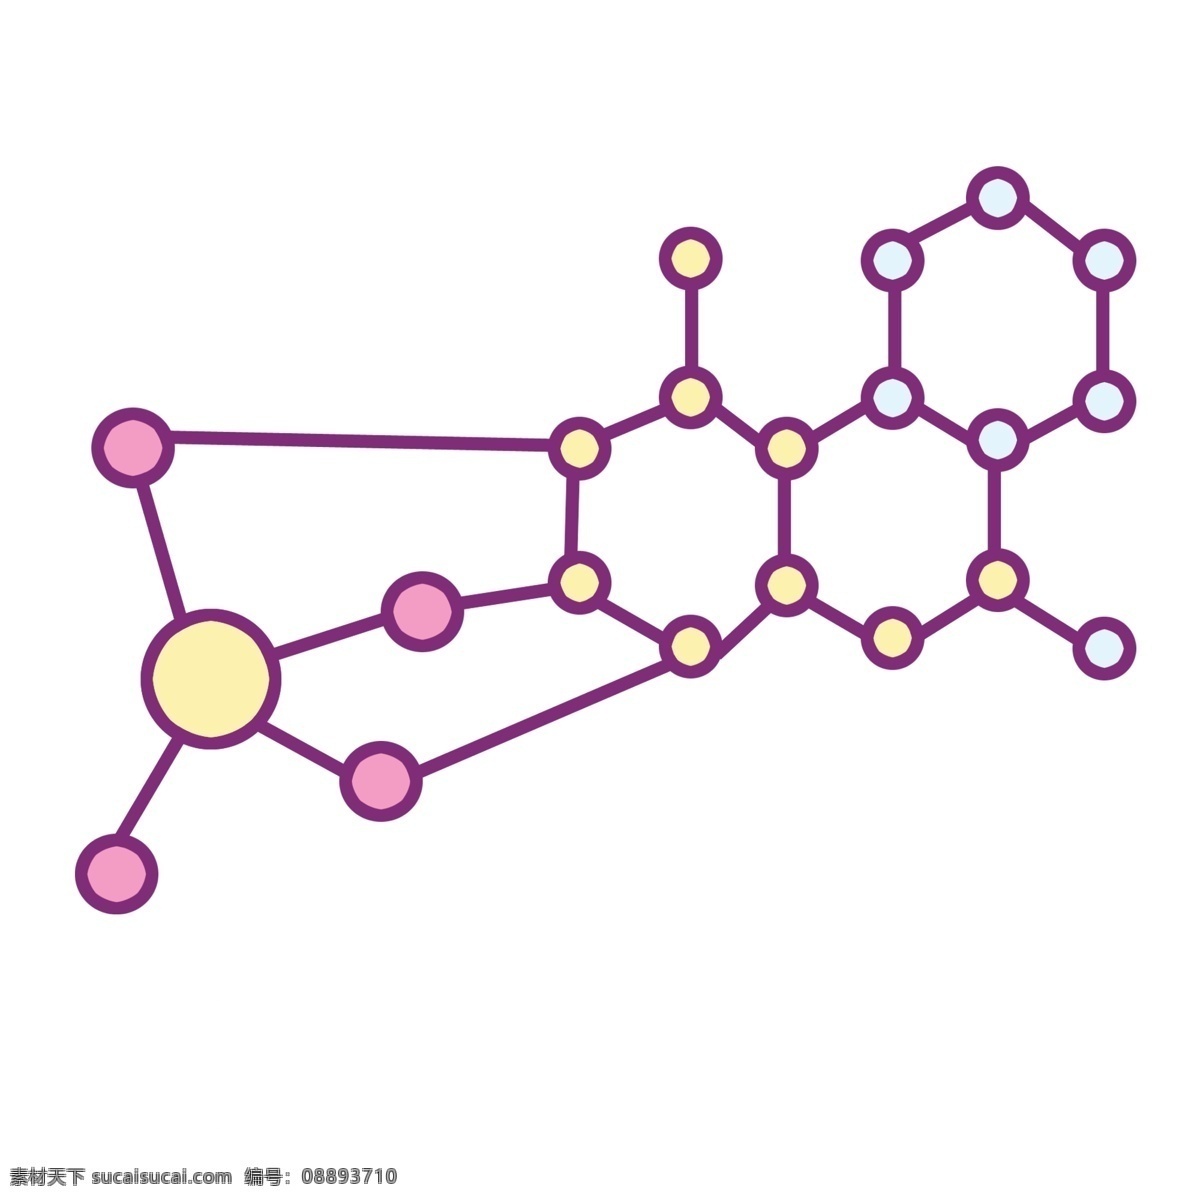 化学 分子 图标 插画 化学图标 分子图标 漂亮的图标 图标装饰 图标插画 粉色的图标 立体图标